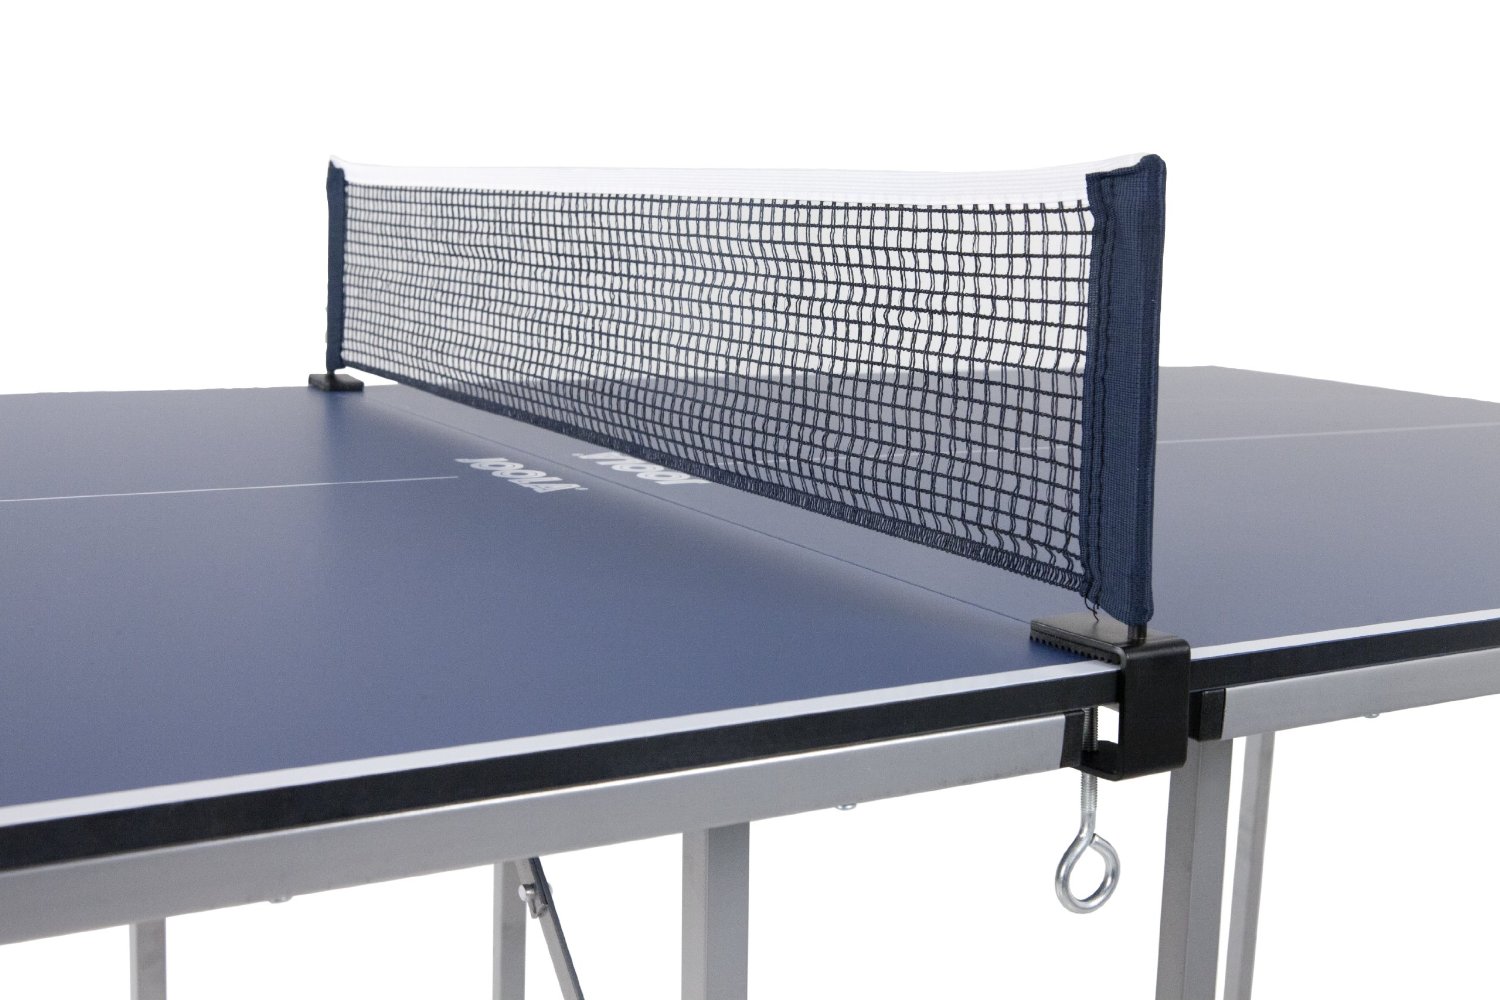 ширина белой полосы на теннисном столе